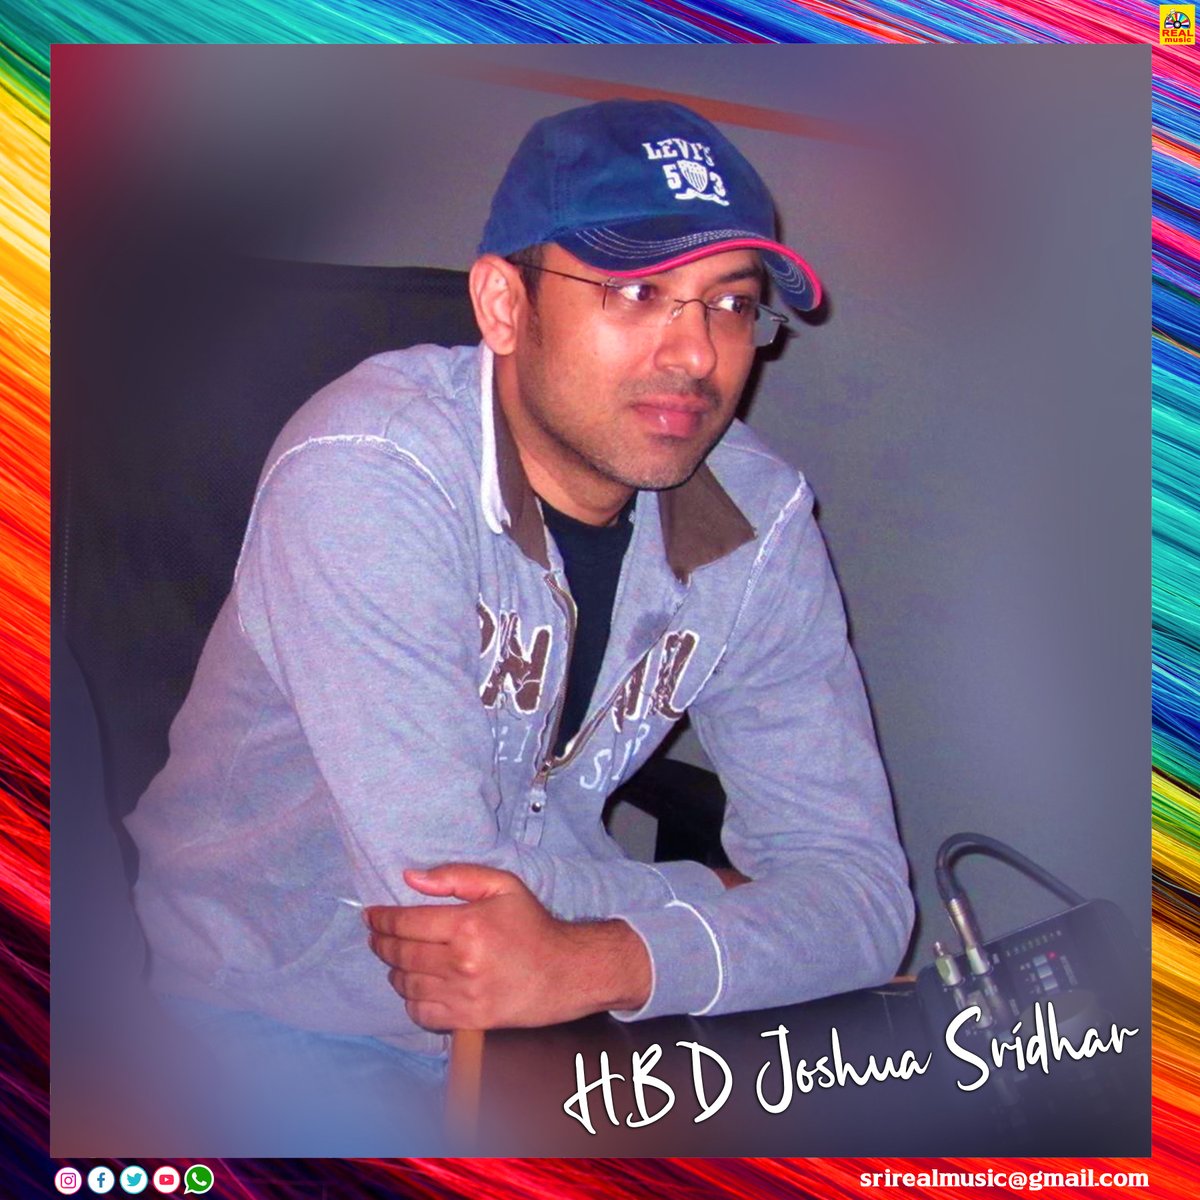 இசையமைப்பாளர் ஜோஷுவா ஸ்ரீதர் அவர்களுக்கு பிறந்தநாள்!  
#JoshuaSridhar | #HappyBirthdayJoshuaSridhar | #HBDJoshuaSridhar | #realcinemas2007